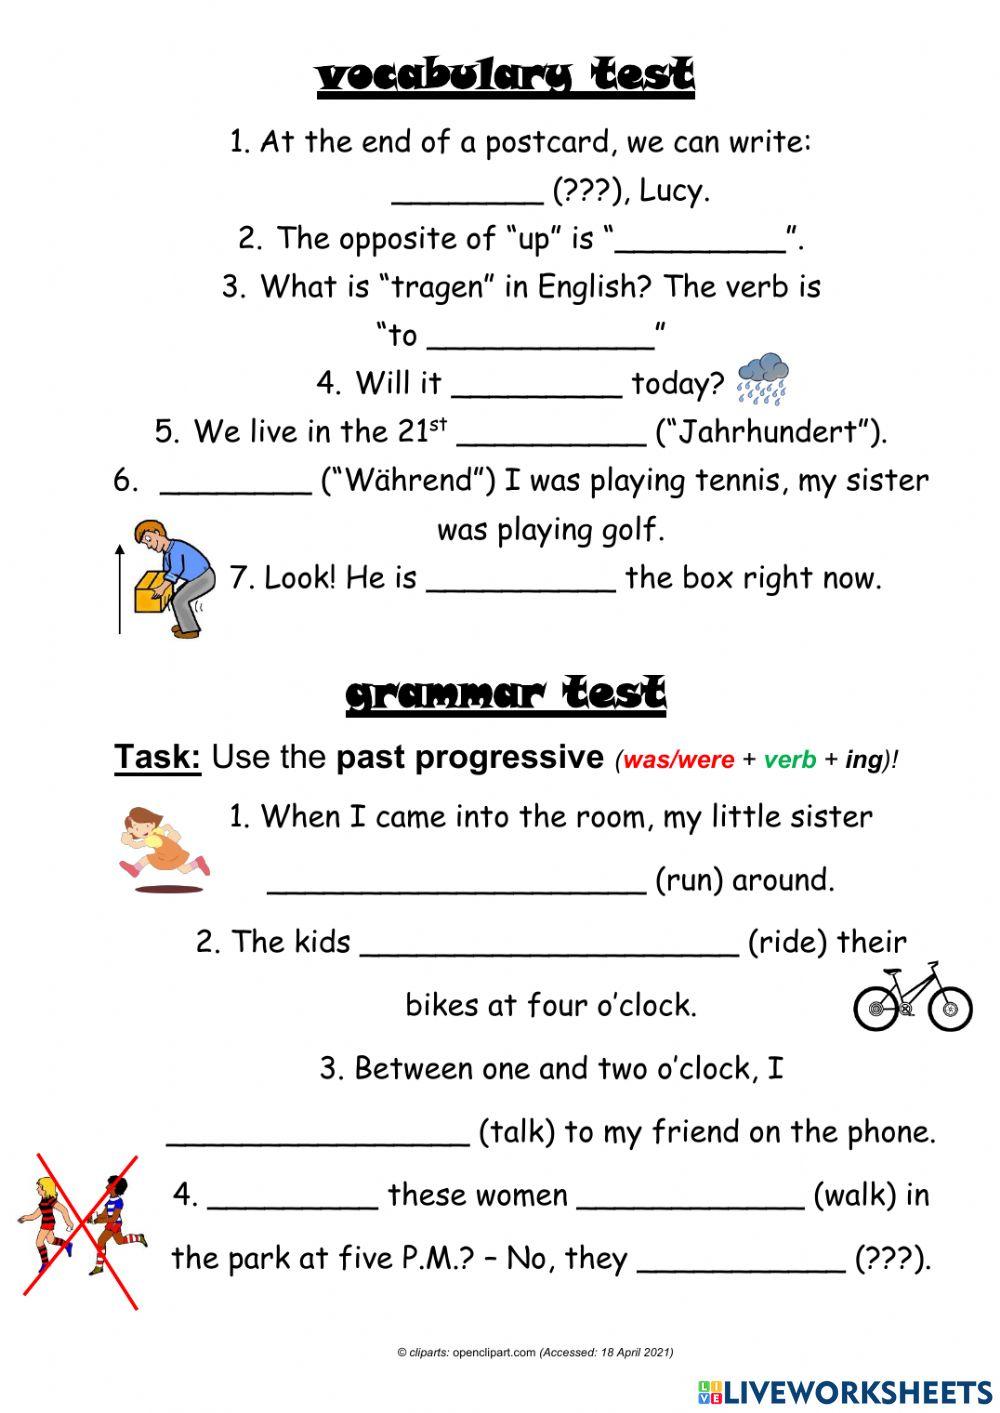 Voc & grammar test